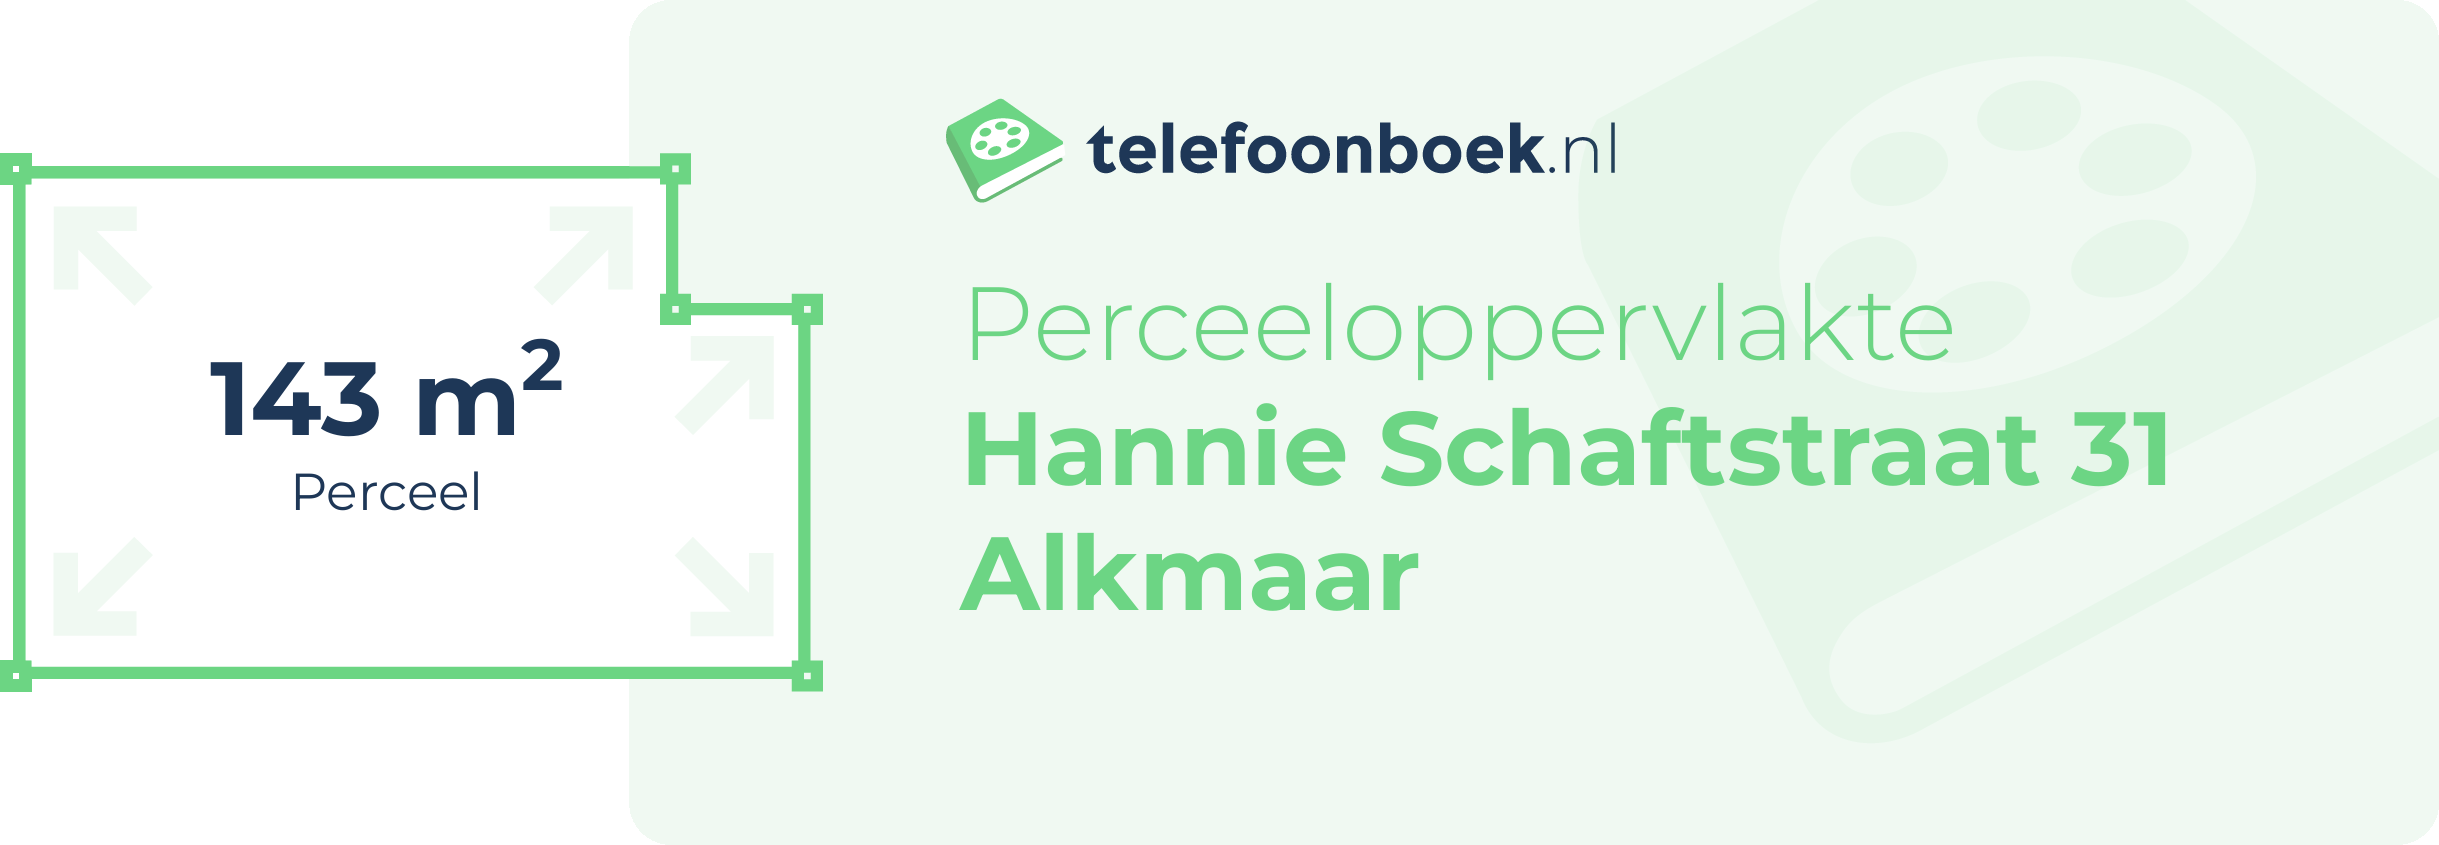 Perceeloppervlakte Hannie Schaftstraat 31 Alkmaar